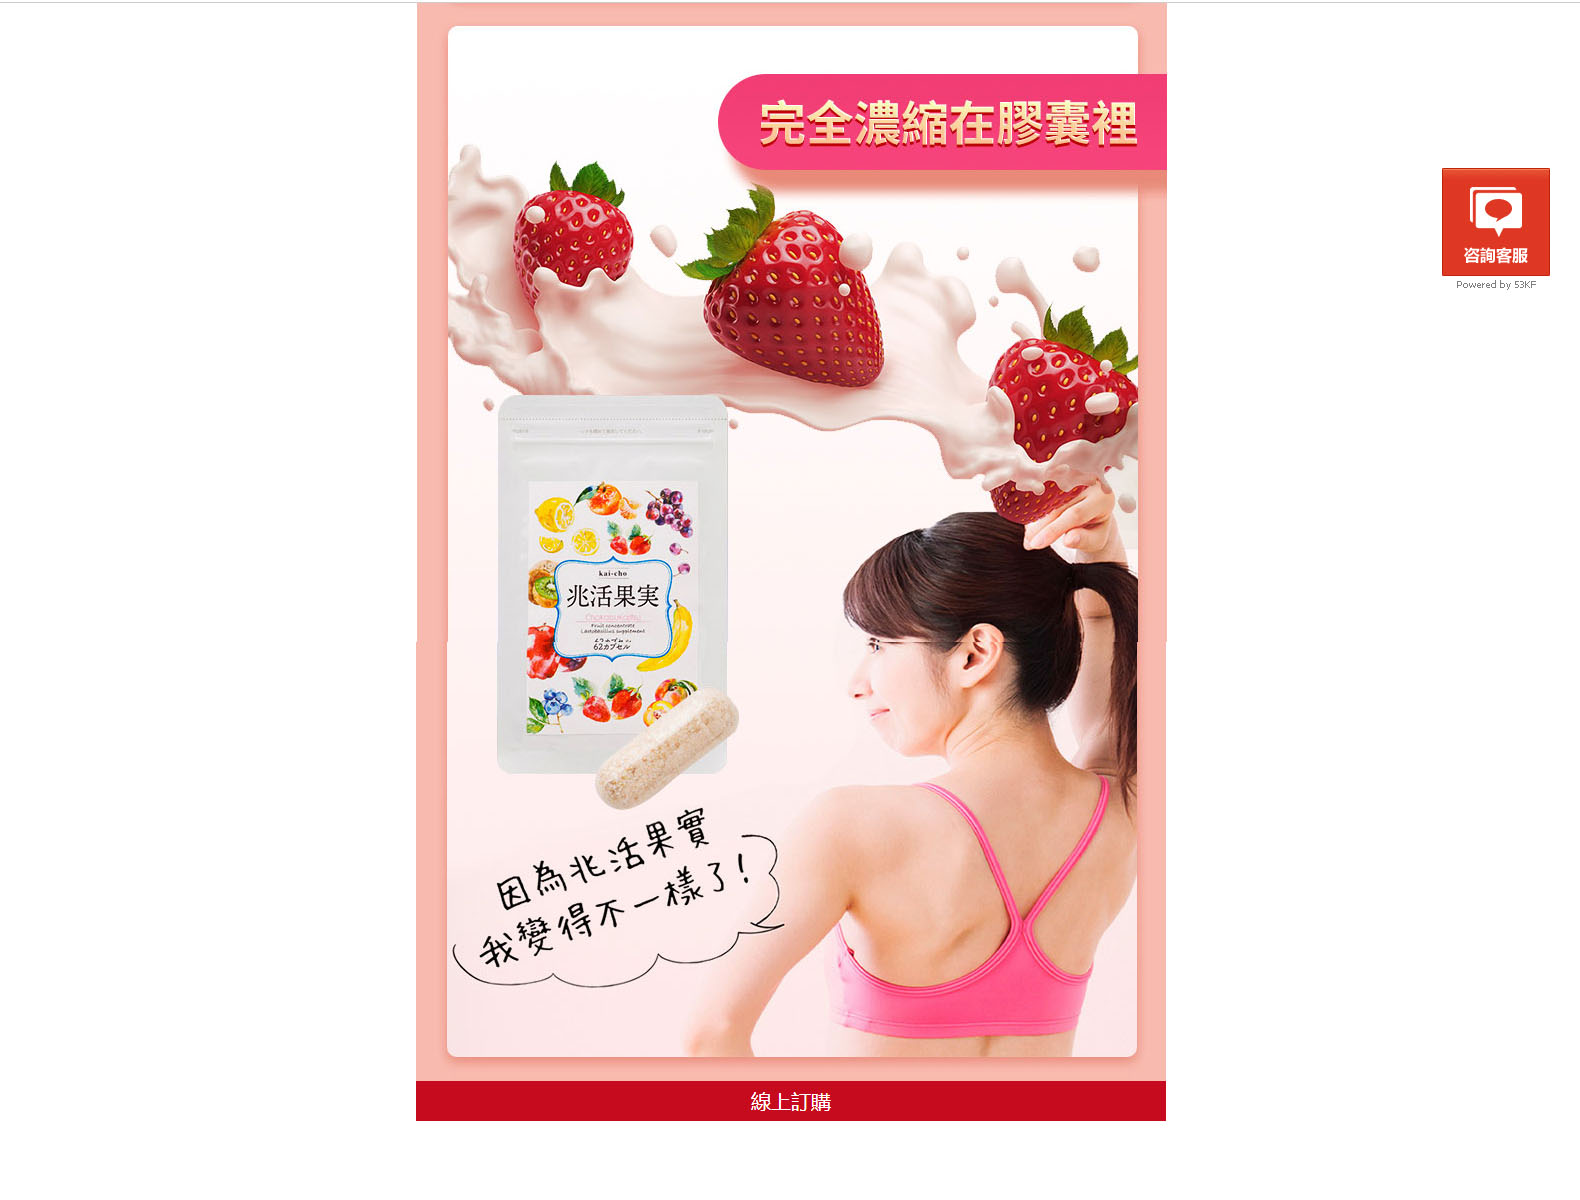 日本兆活果實專賣店-甘王草莓乳酸菌,改善腸道,瘦身減肥保健食品